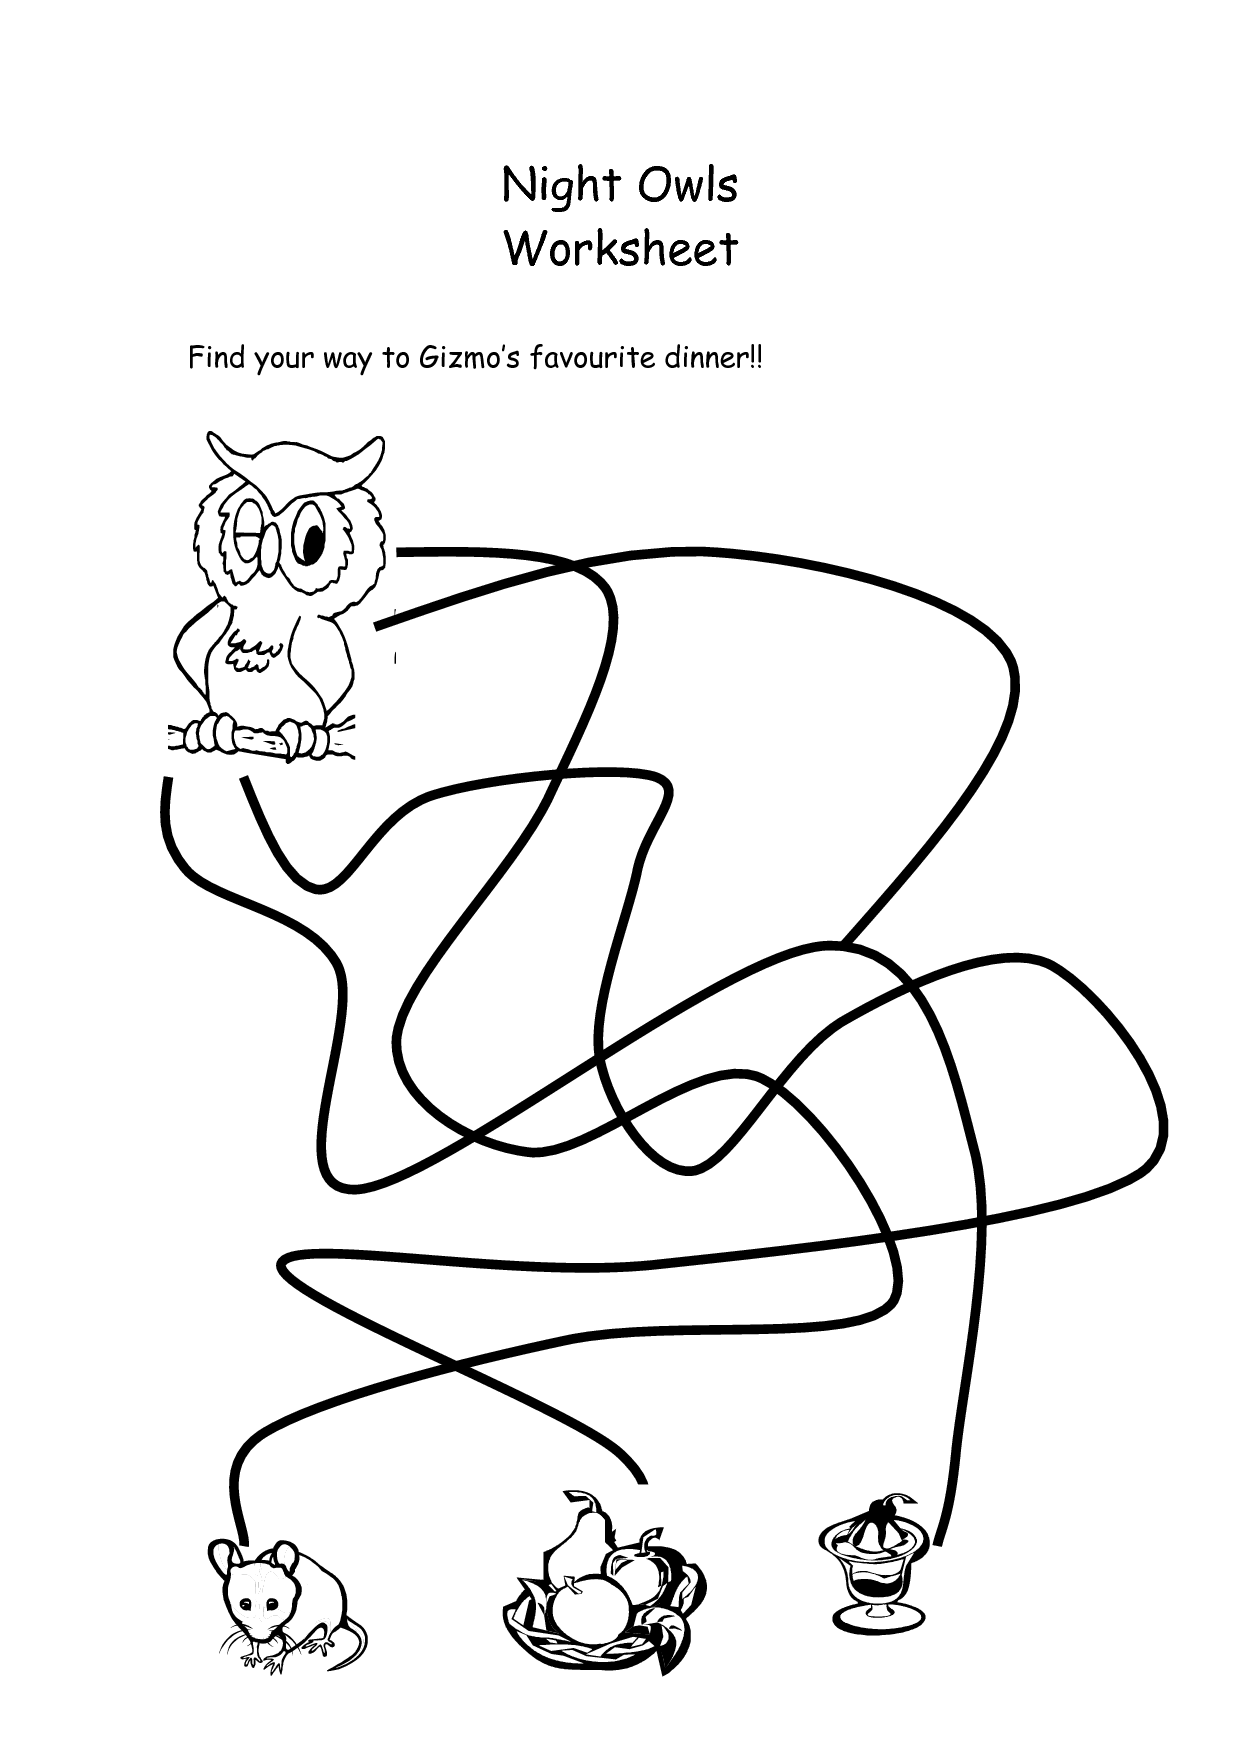 9 Best Images of Worksheets About Owls - Owl Worksheets Kindergarten